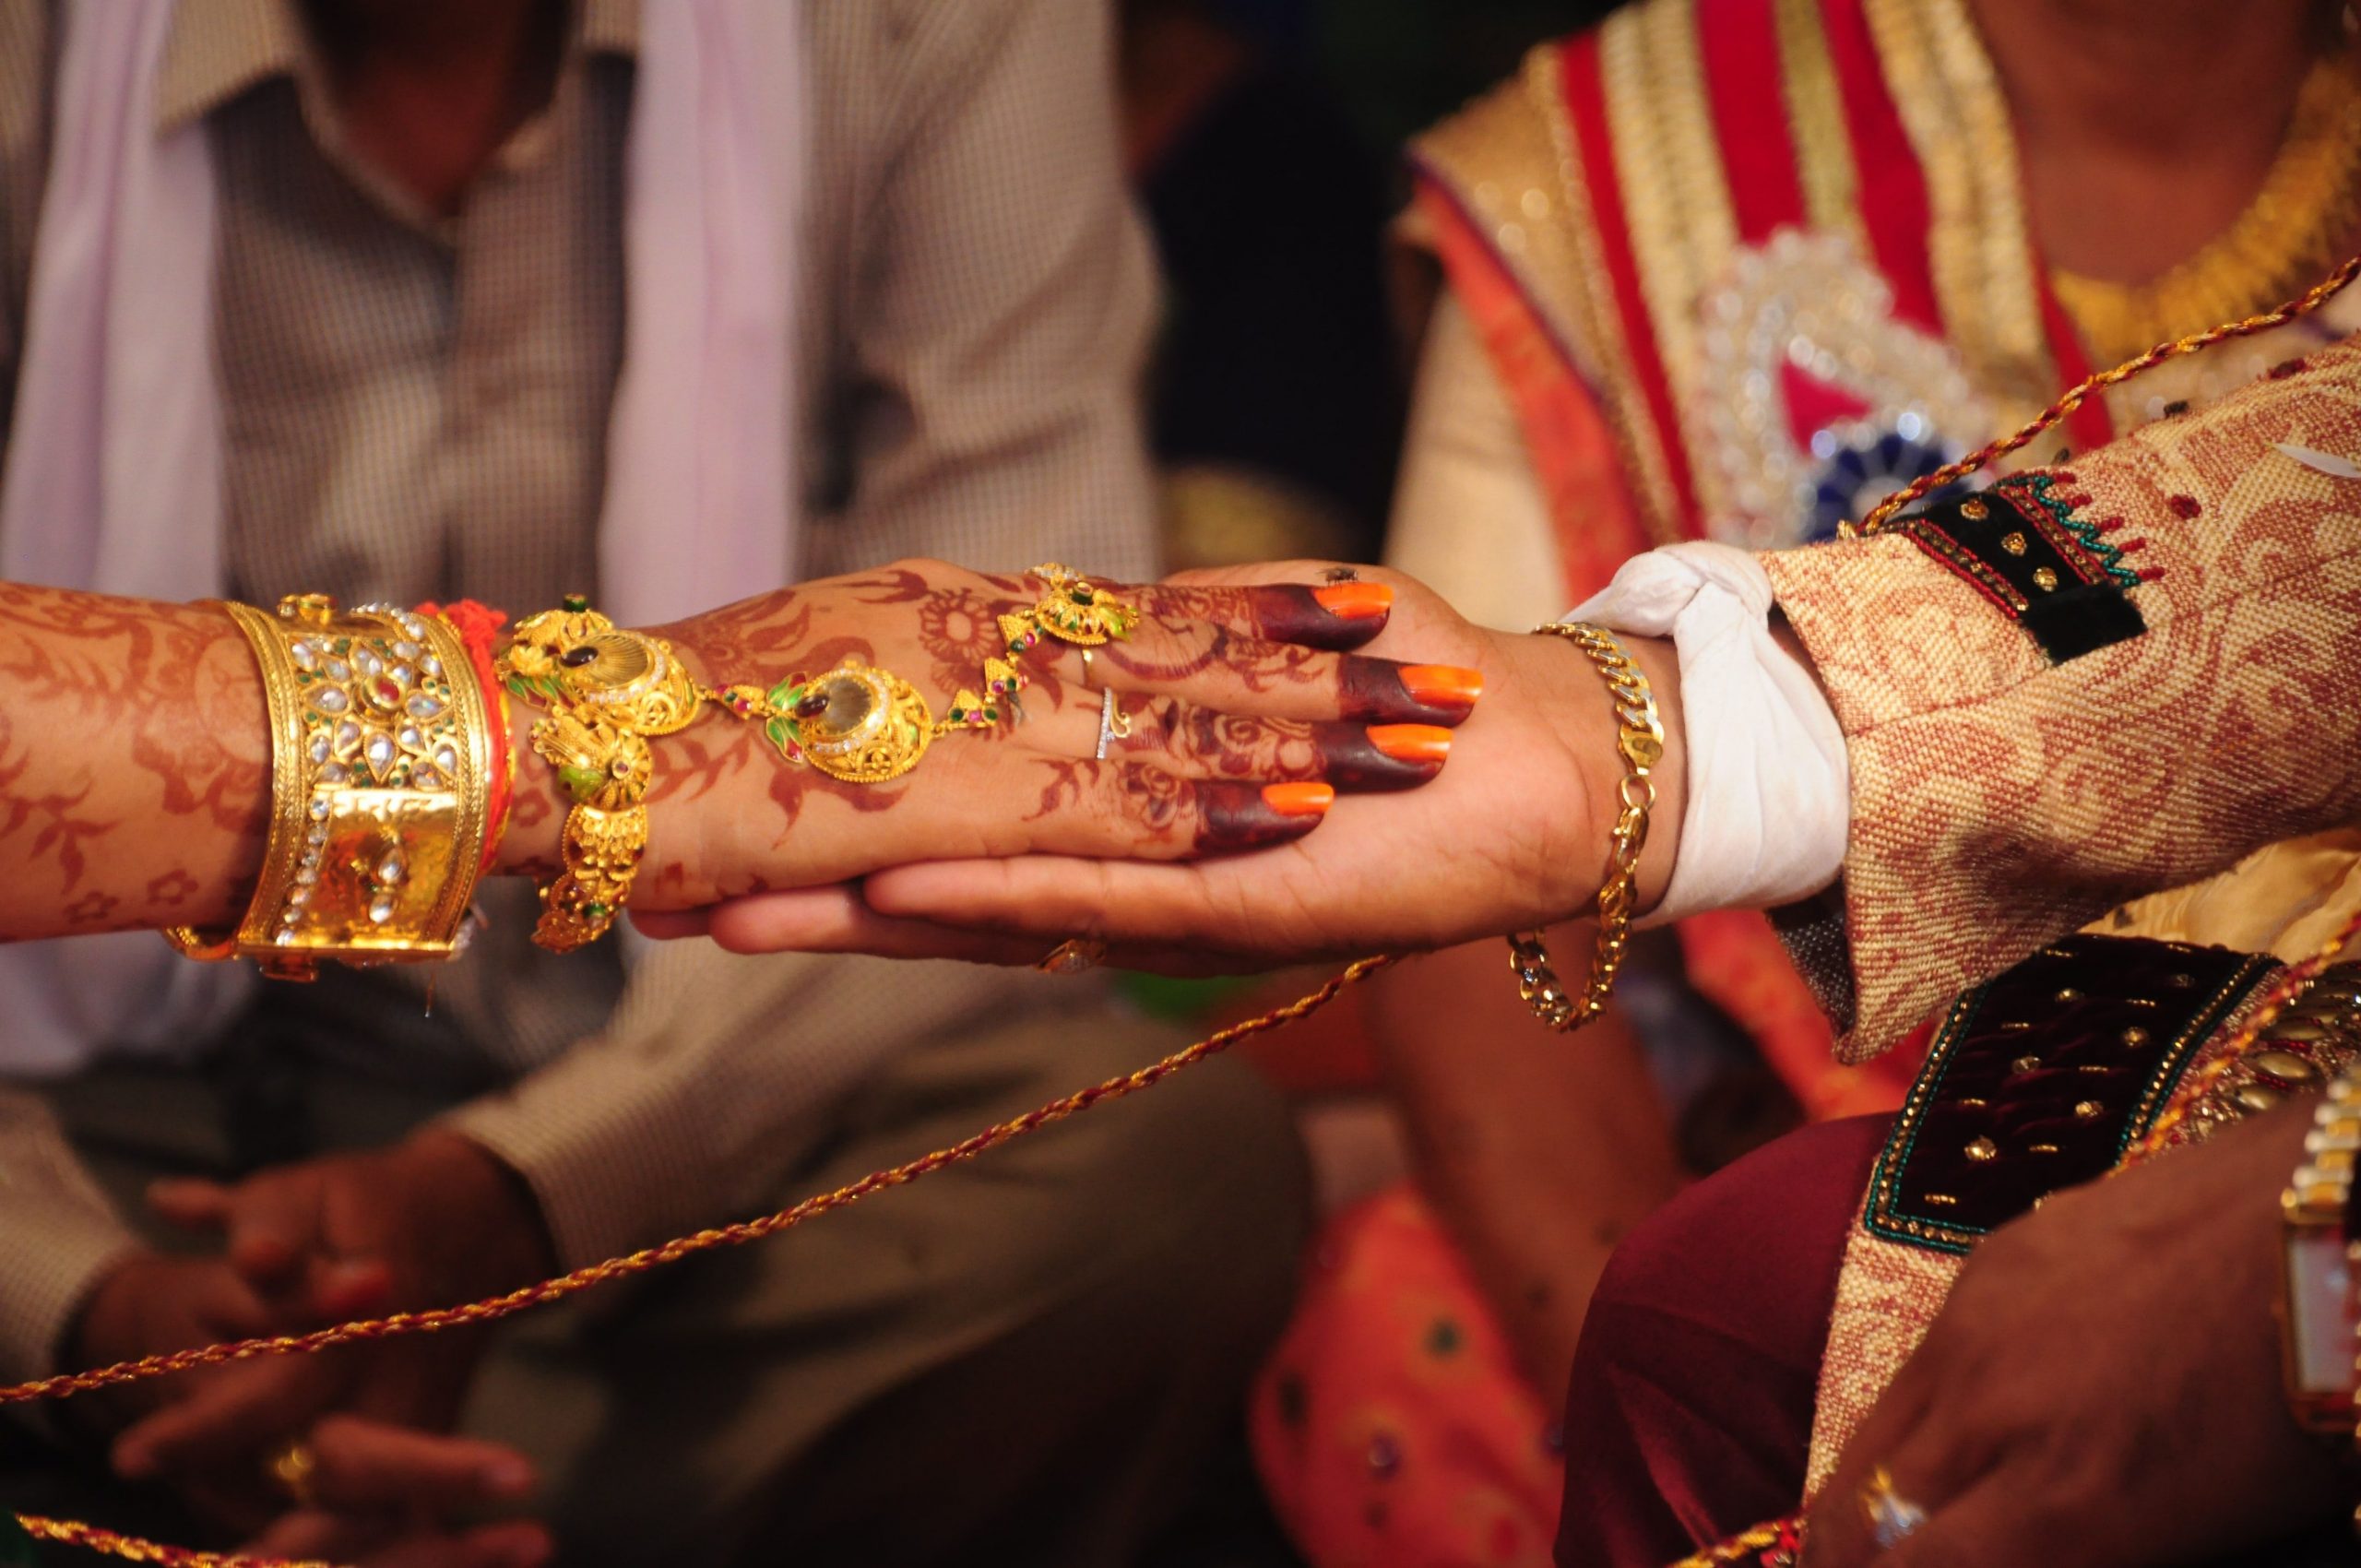 Fairytale wedding: Dwarf bride and groom, shorter than 3 feet get married